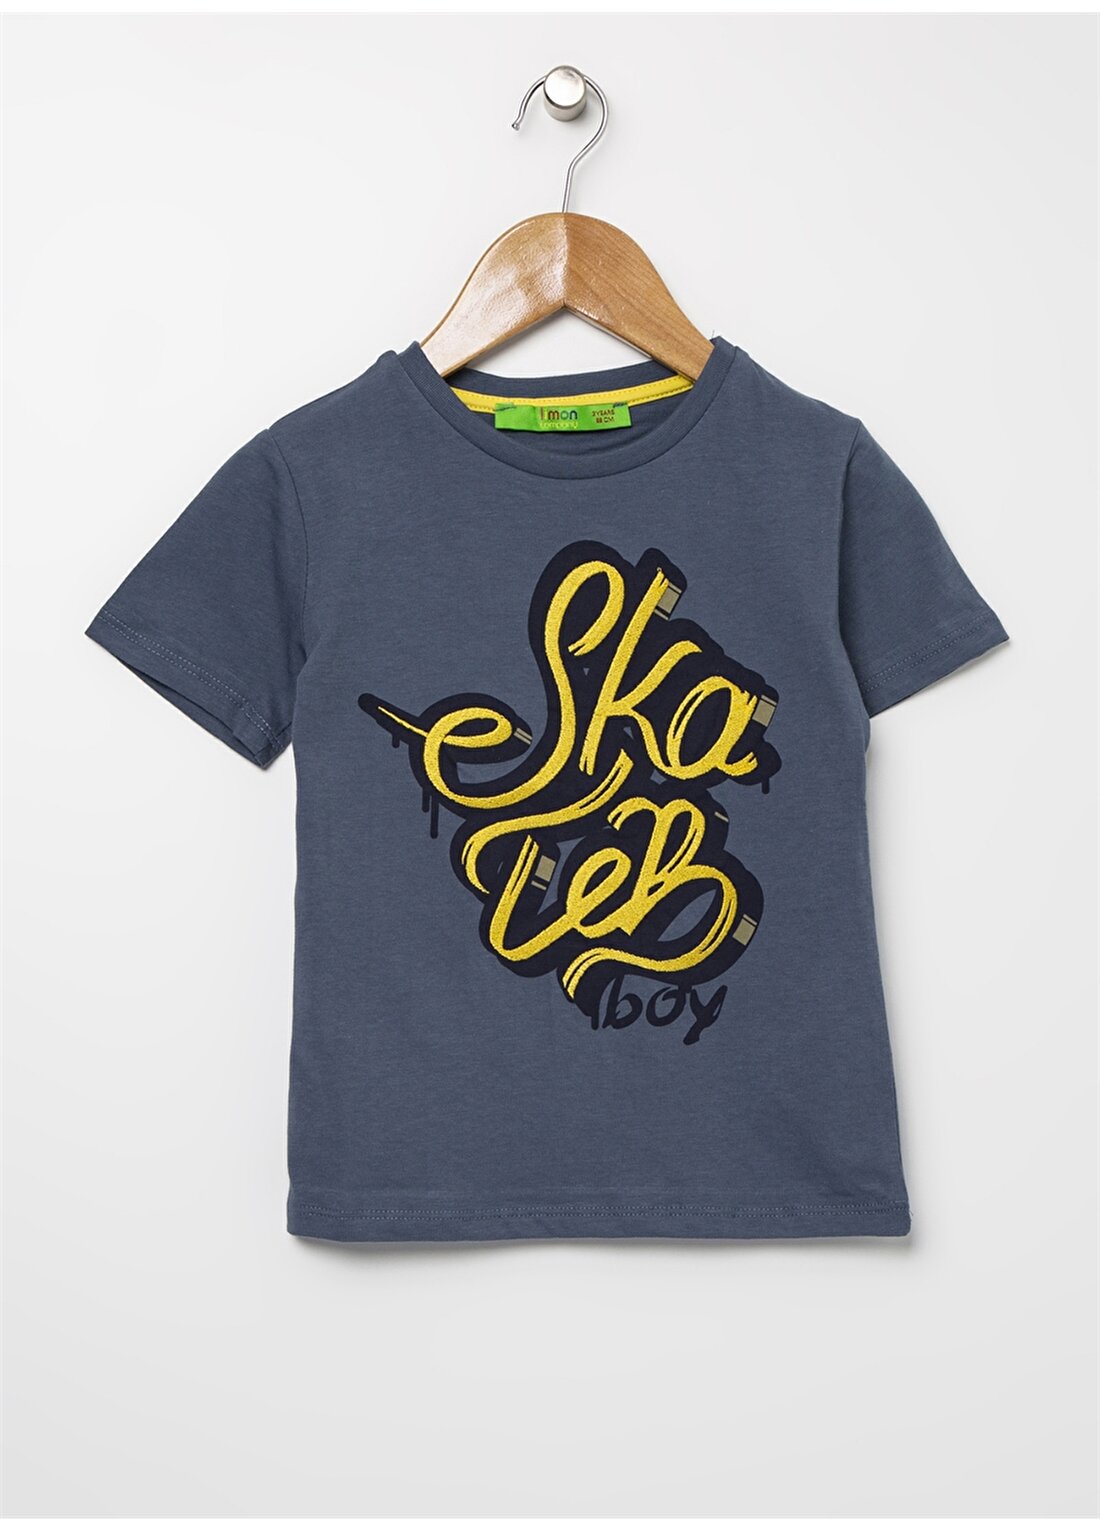 Limon Skaboy İndigo Yazı Baskılı Erkek Çocuk T-Shirt